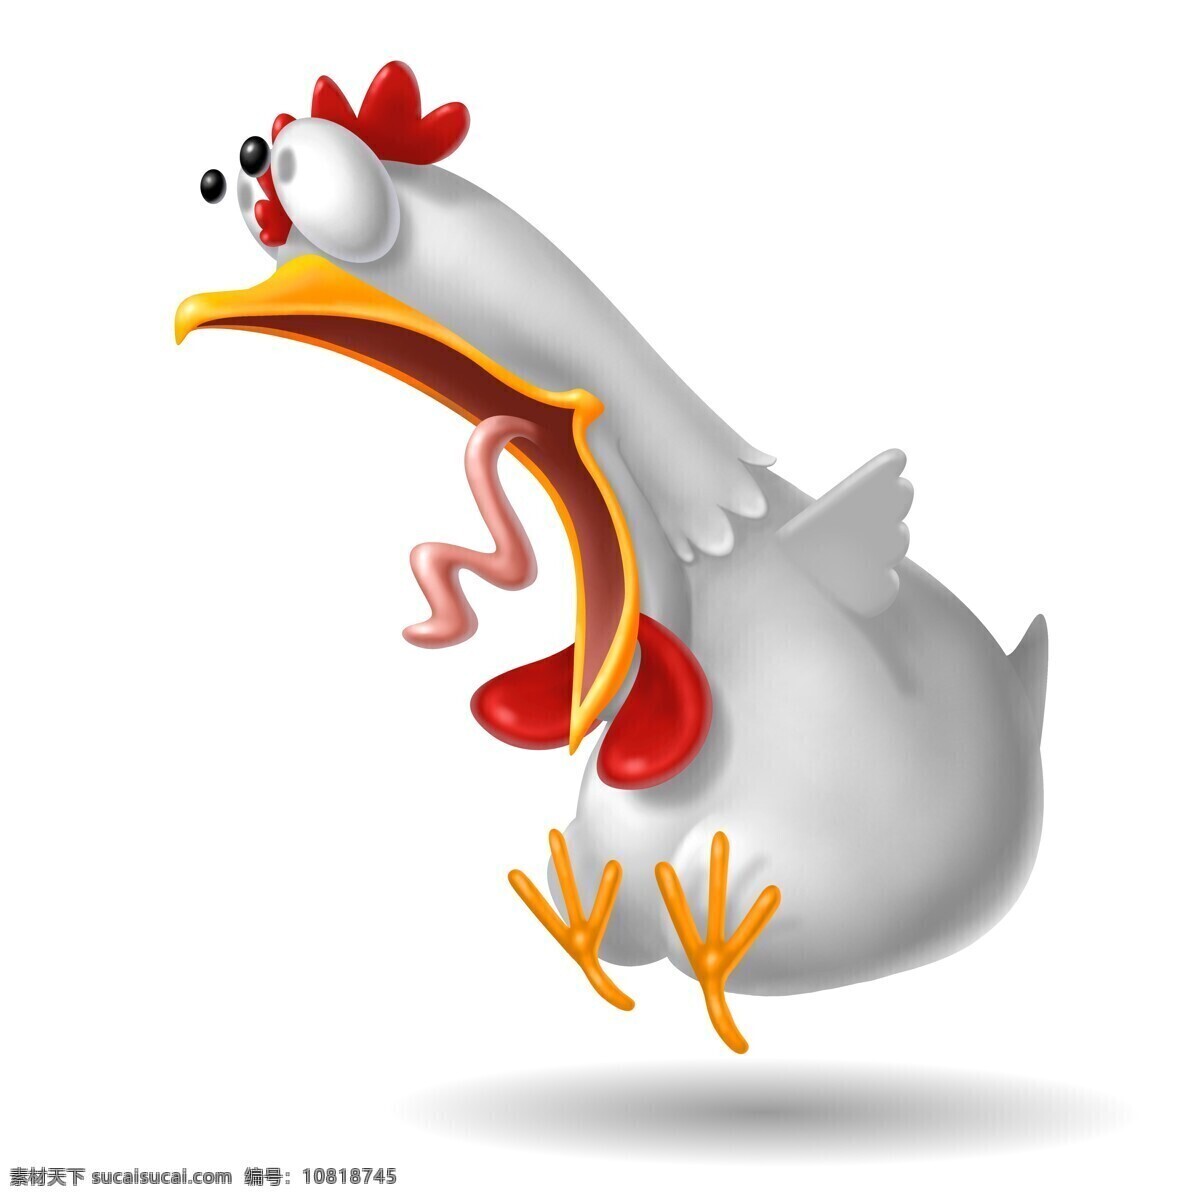 夸张 表情 公鸡 做 惊讶 动物 3d卡通动物 陆地动物 生物世界 卡通动物